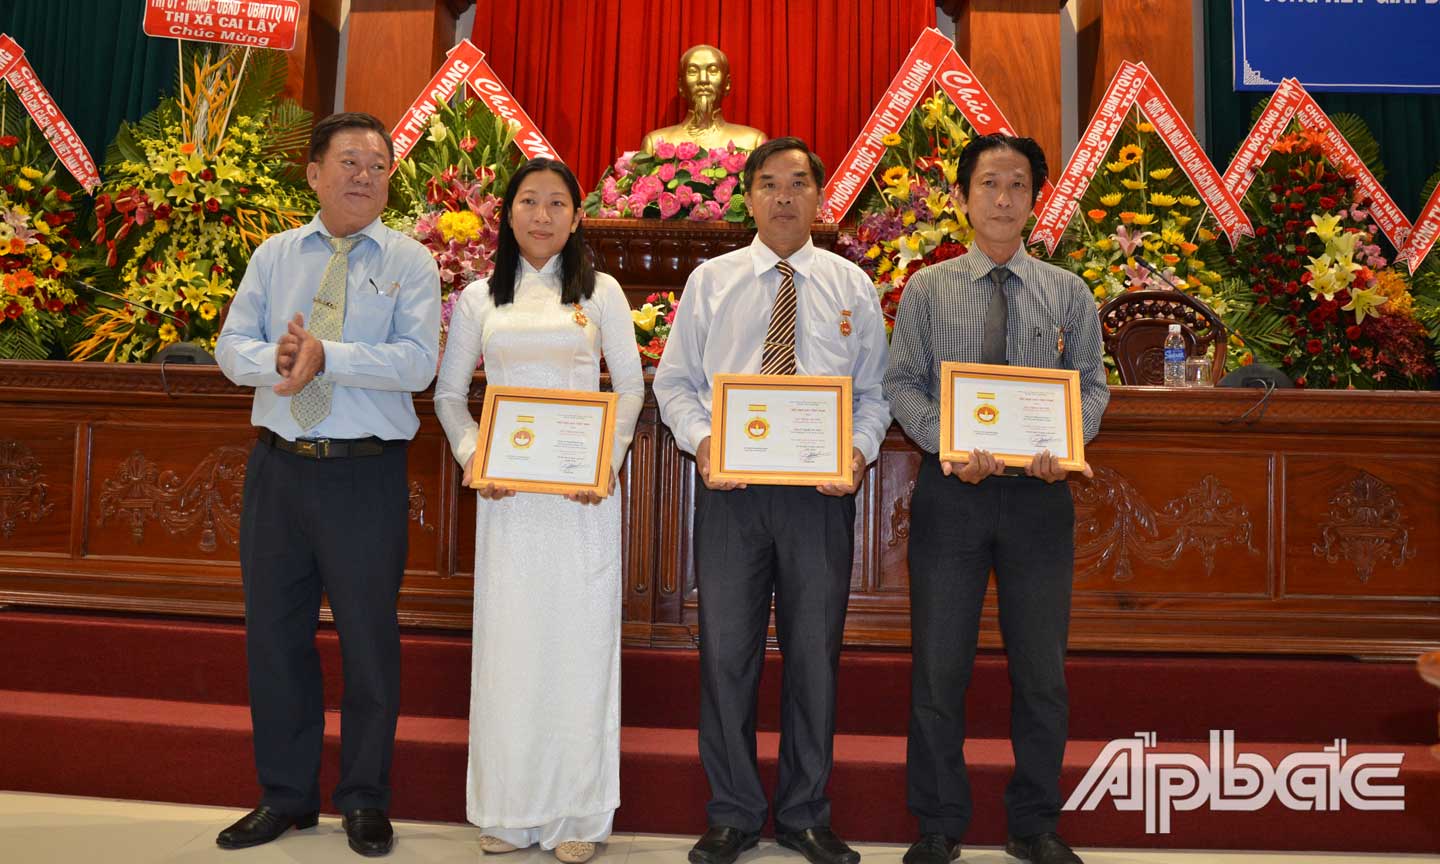 Đồng chí Nguyễn Văn Phước Cường (bìa trái) trao Kỷ niệm chương Vì sự nghiệp báo chí cho các nhà báo.